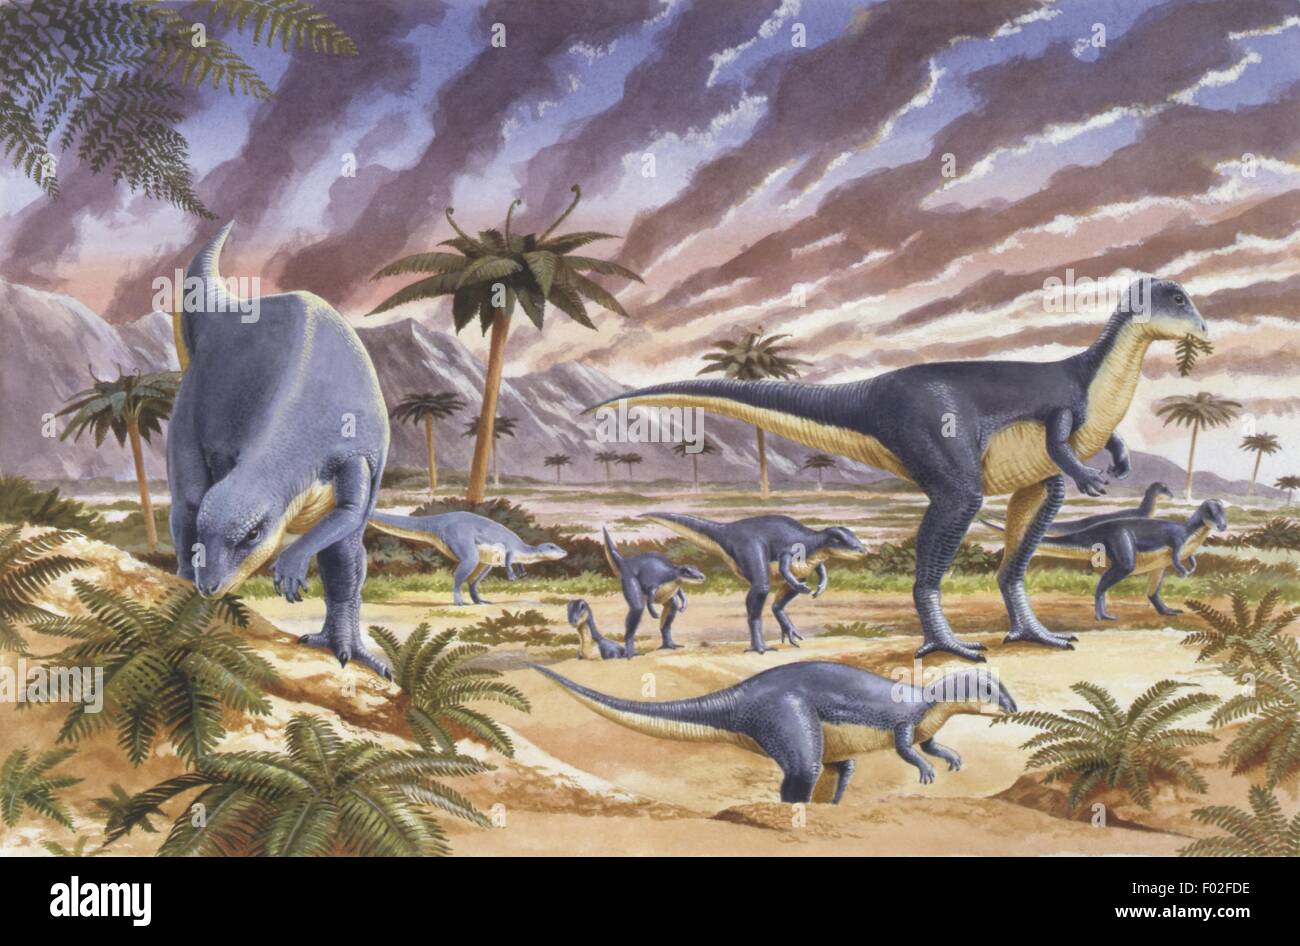 Paléozoologie - Jurassique - Dinosaures - Troupeau d'Dysalotosaurus (Dryosaurus) - Art par Nick Pike Banque D'Images